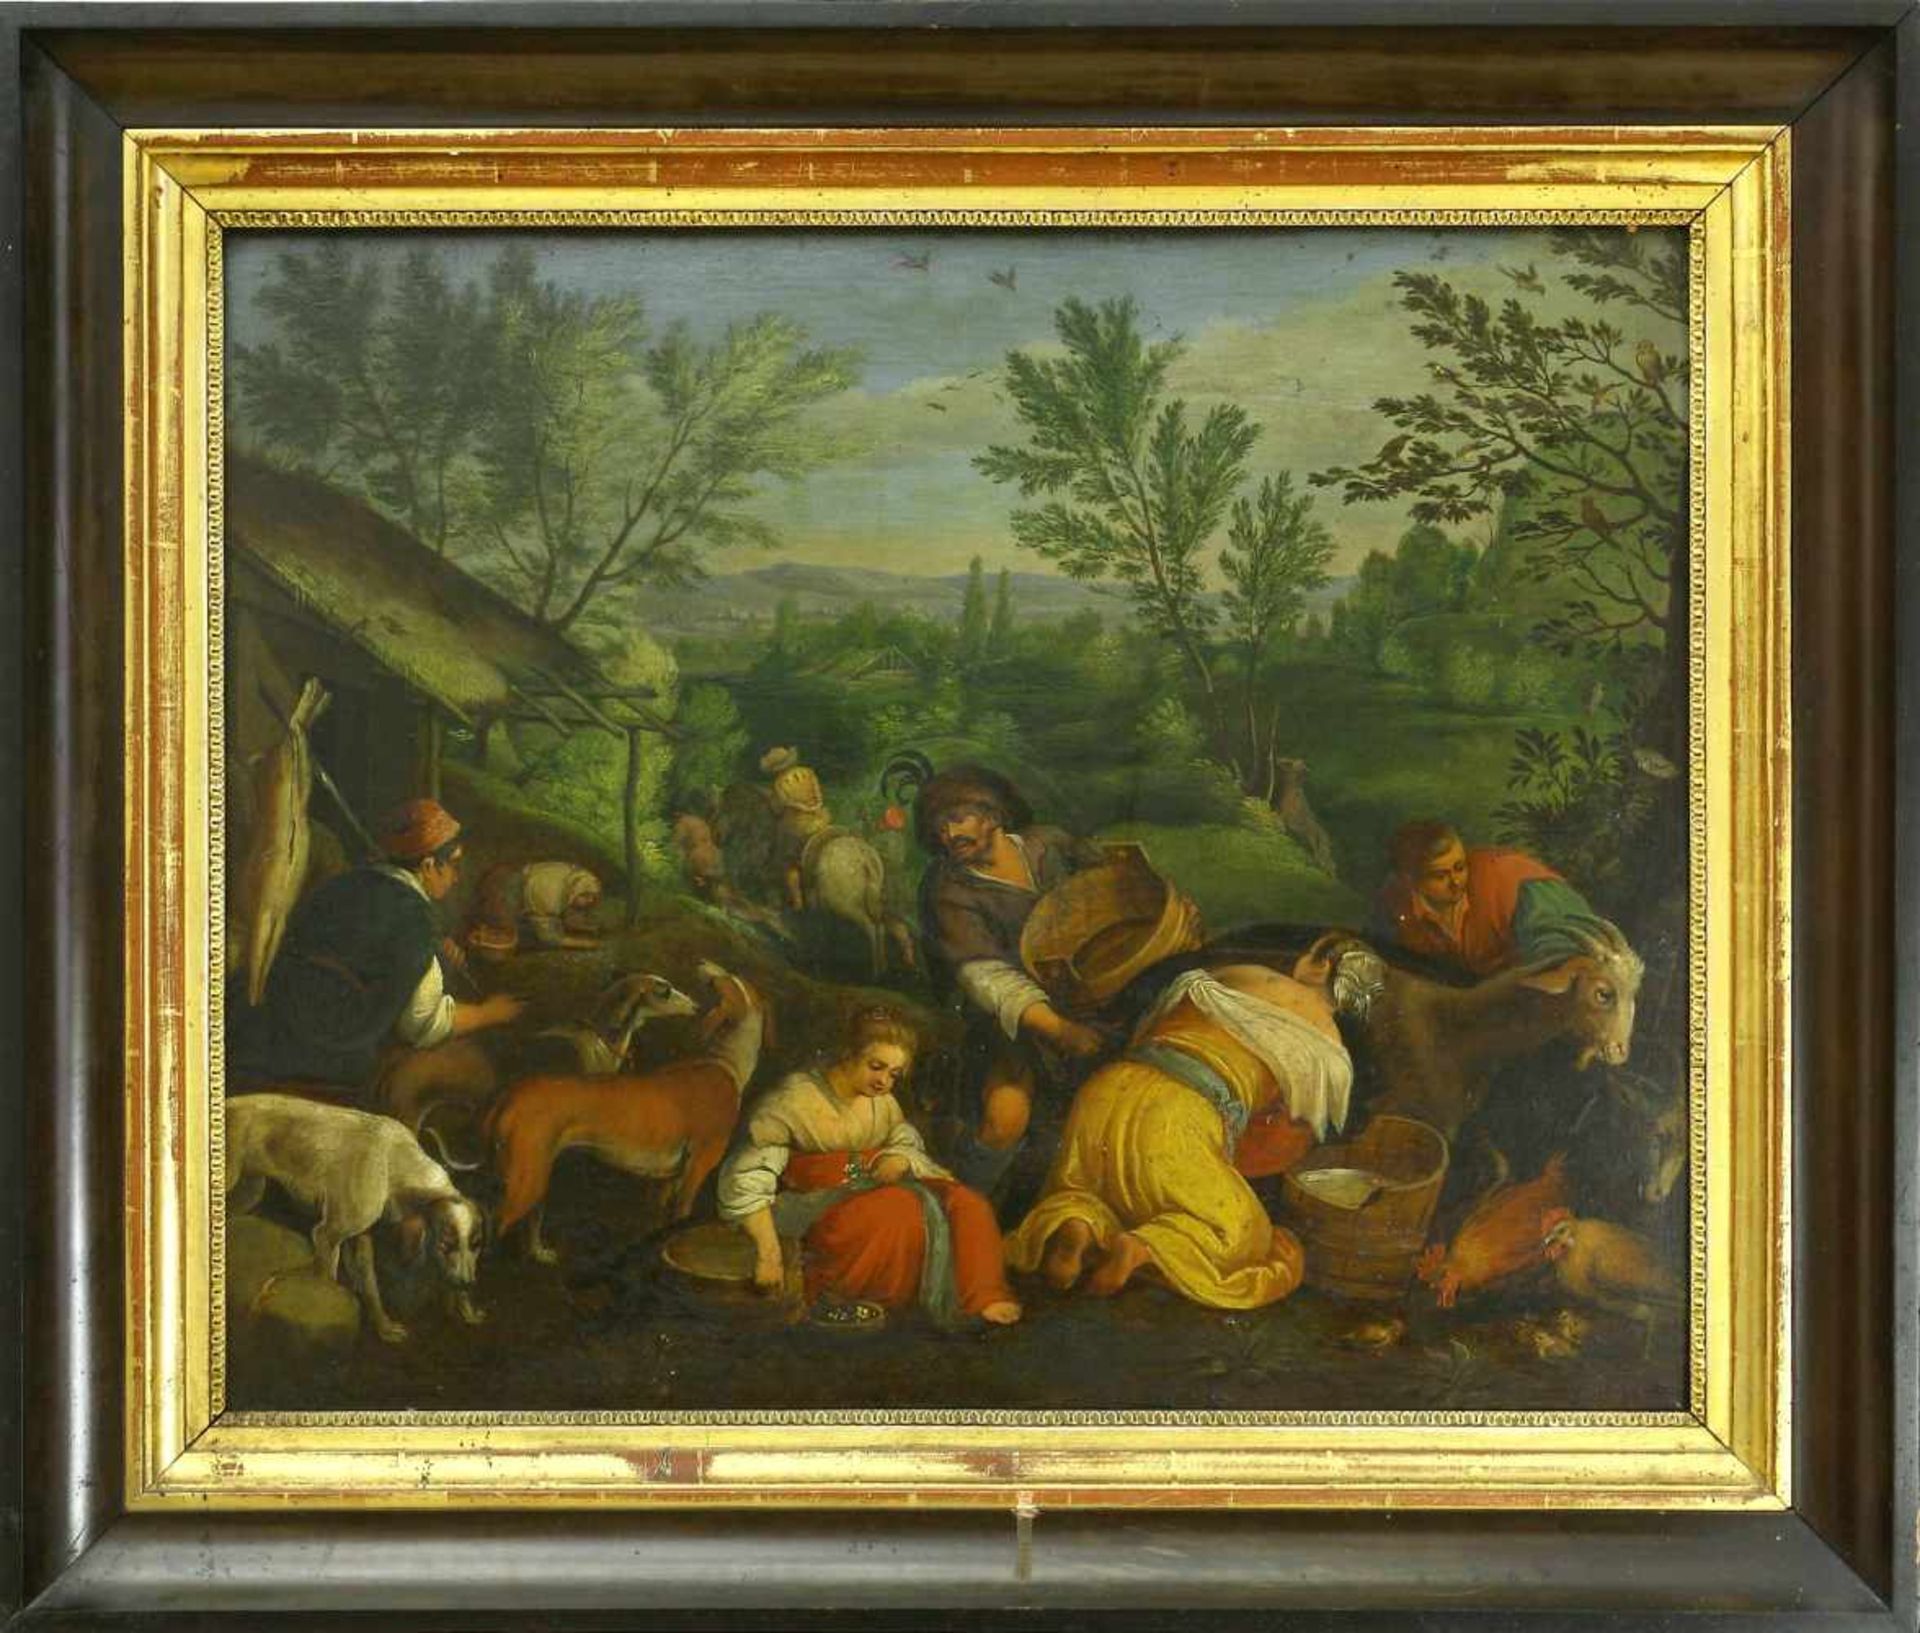 Da Ponte, Jacopo, genannt Bassano (1510/15 Bassano del Grappa - 1592 ebd.) nachDie vier